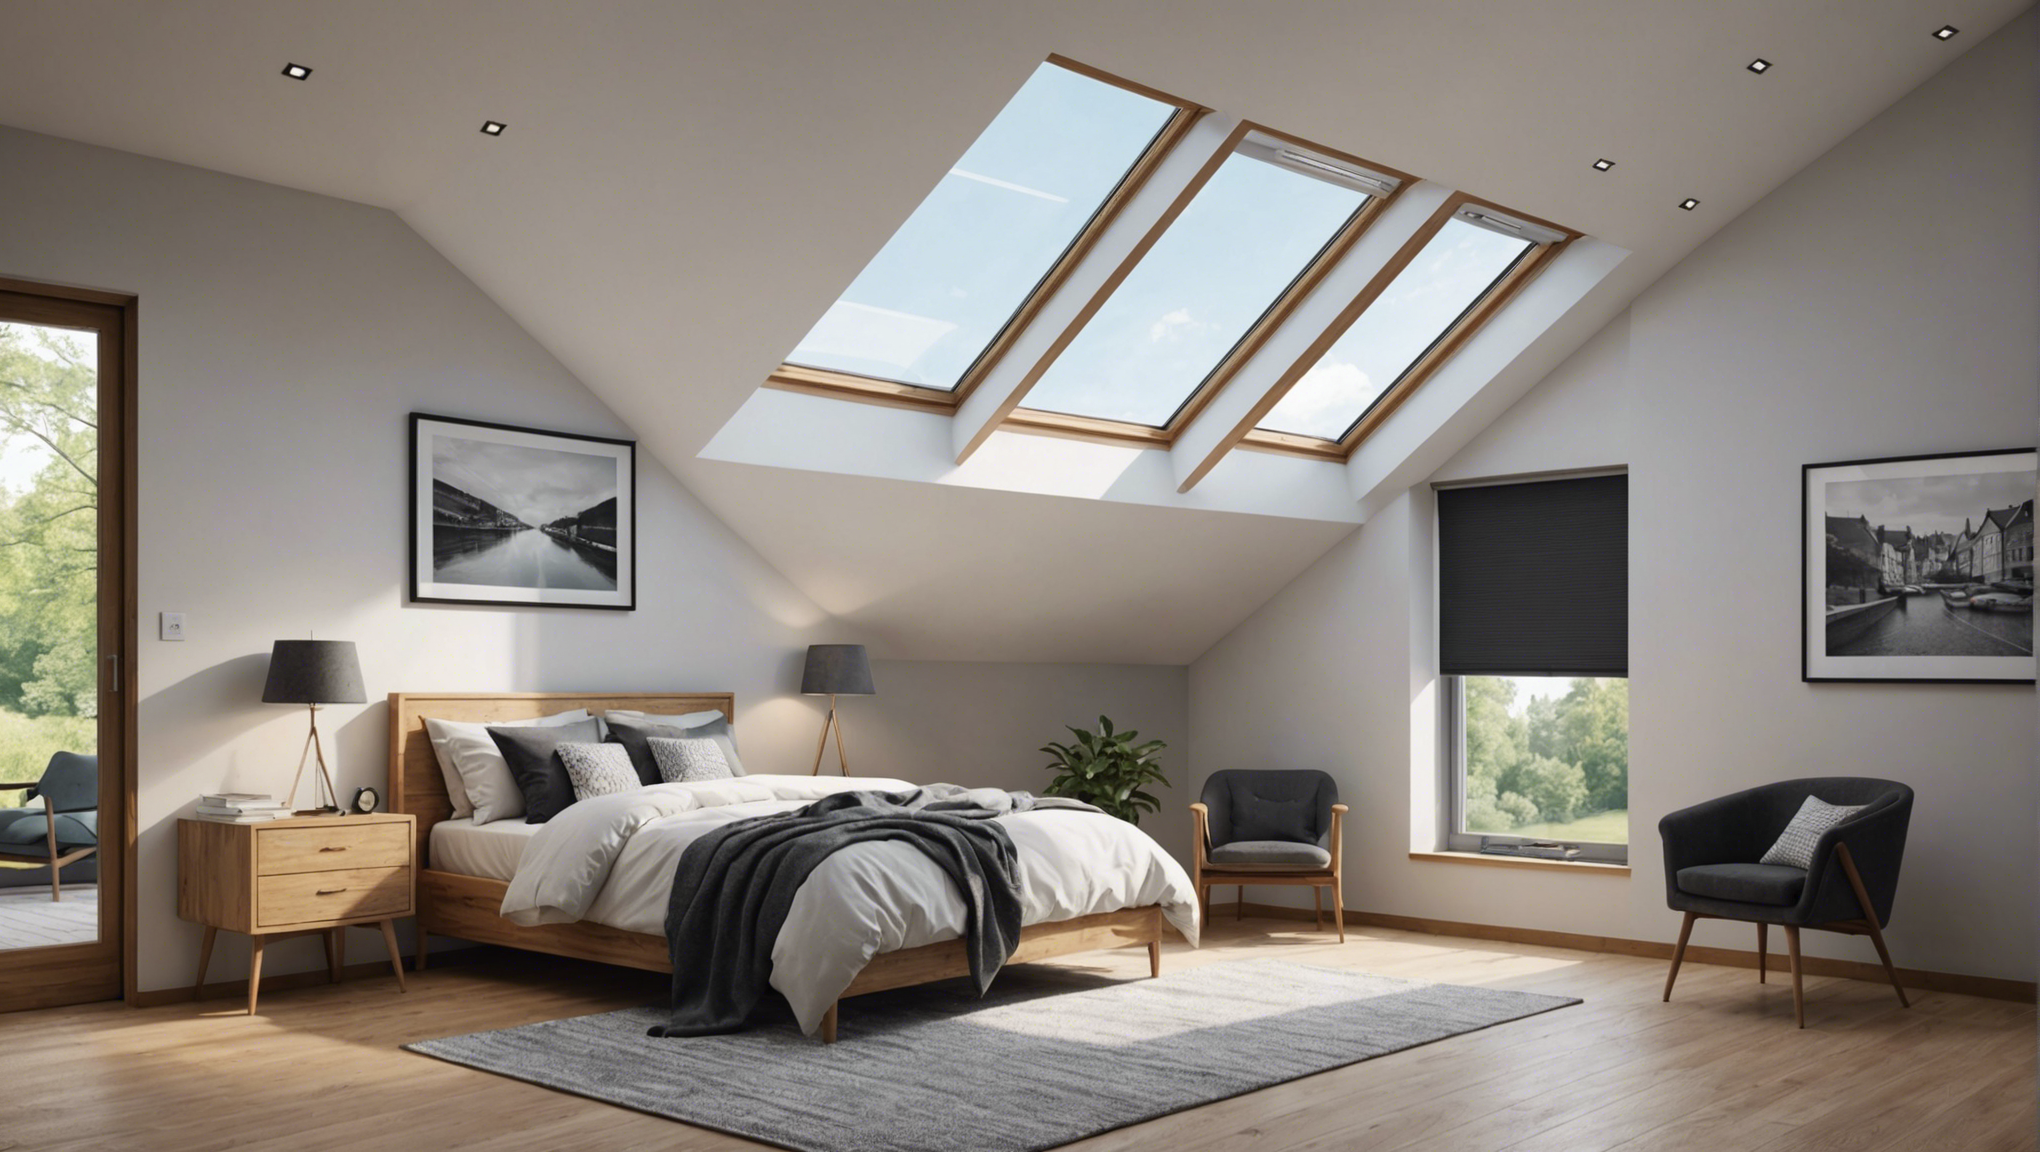 découvrez pourquoi une fenêtre de toit est le choix idéal pour apporter de la lumière naturelle dans votre intérieur. optez pour une atmosphère lumineuse et agréable avec une fenêtre de toit.